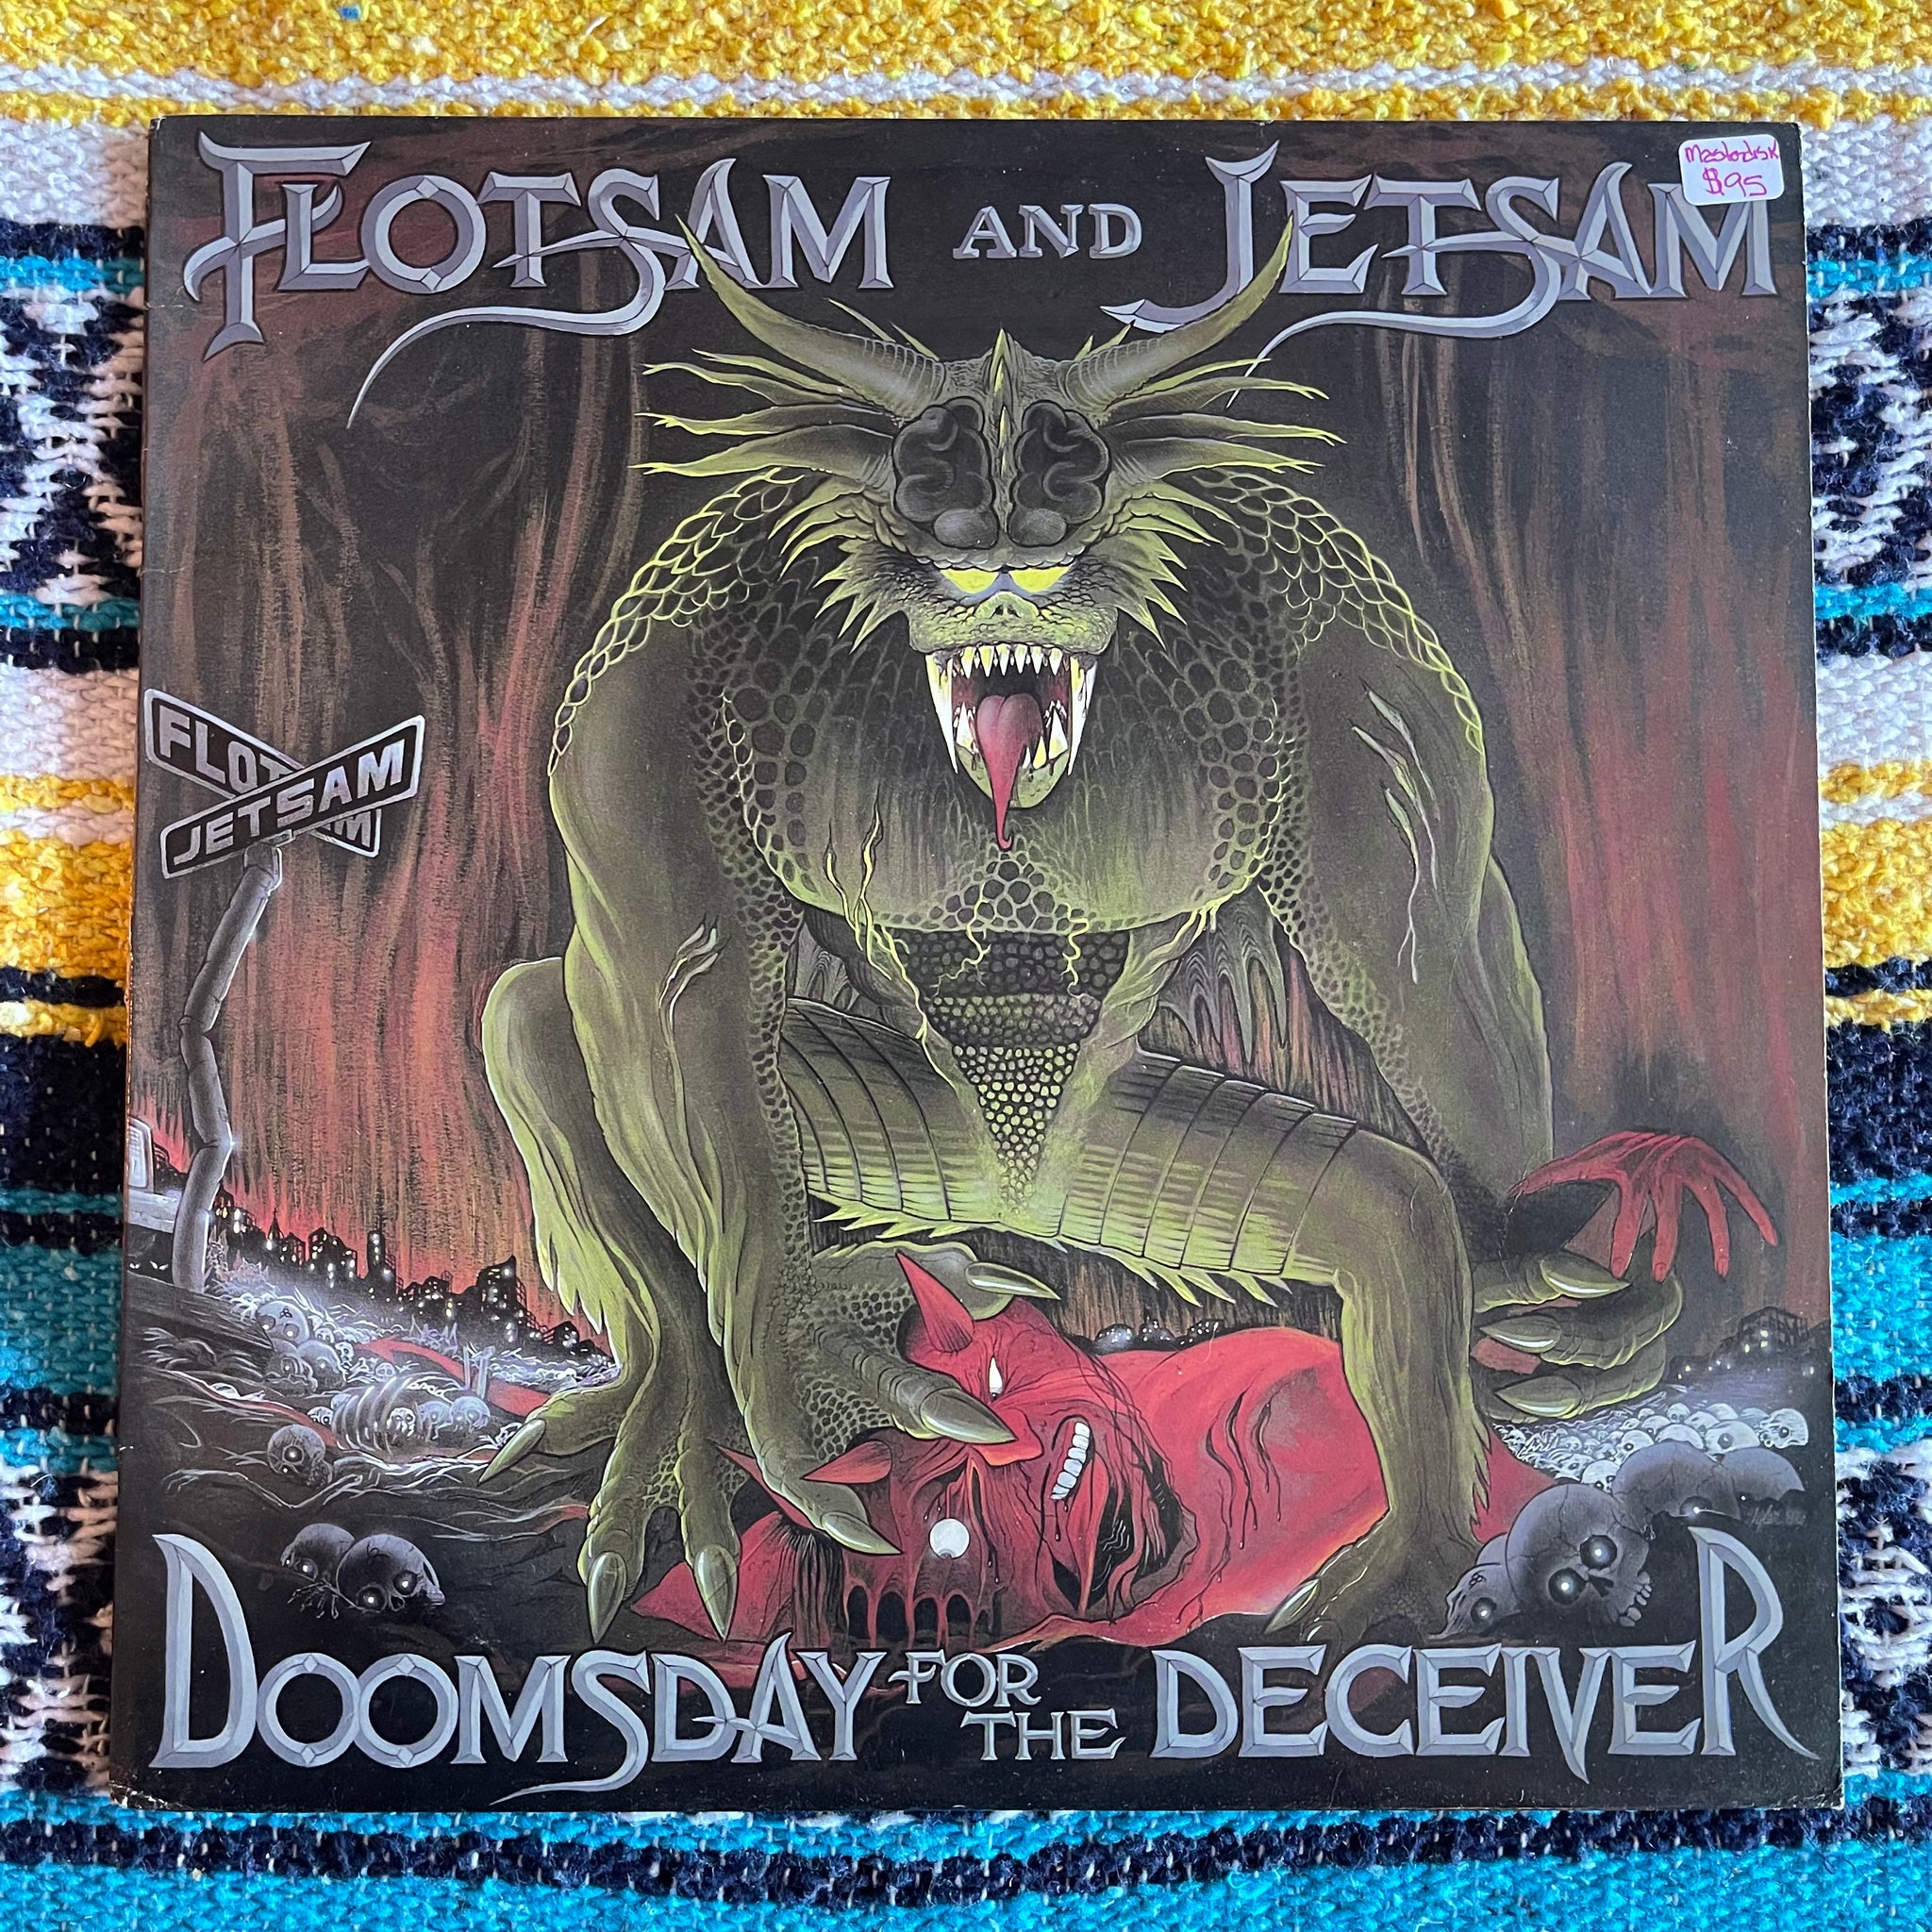 Flotsam and Jetsam-Doomsday for the Deceiver